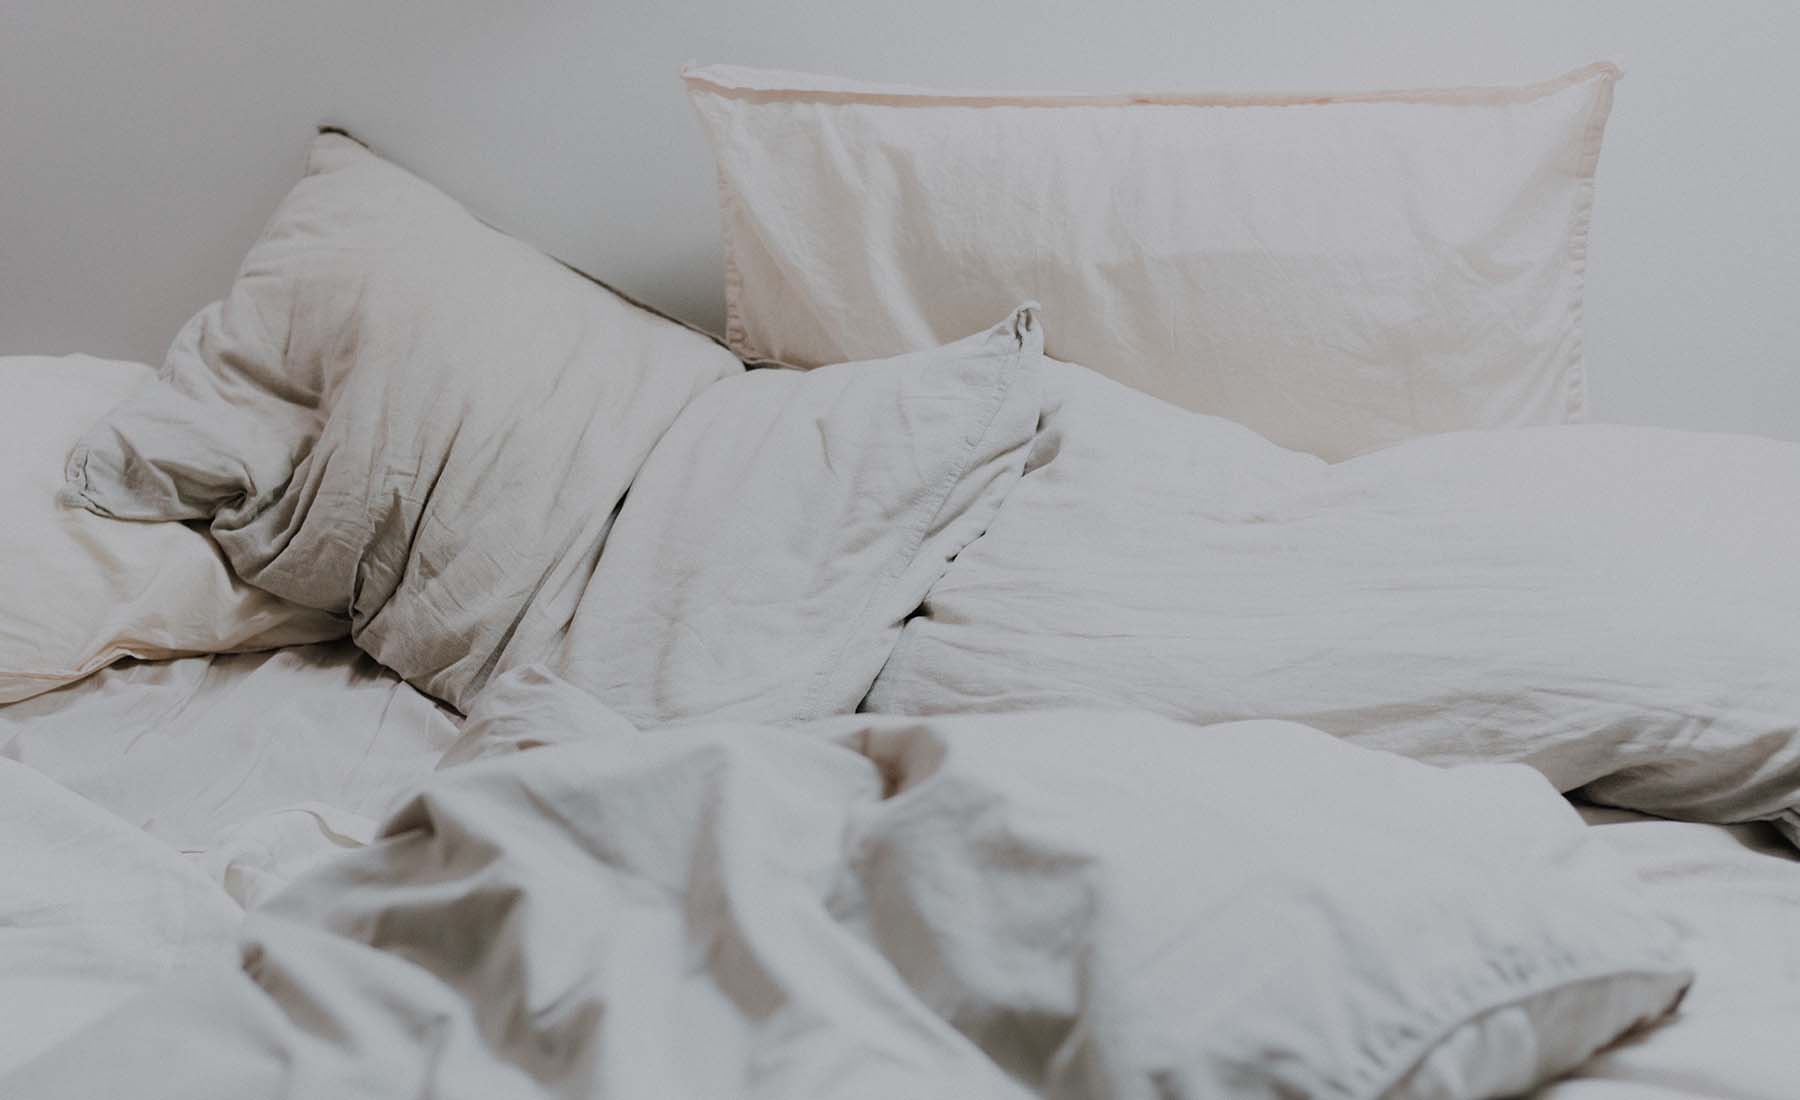 Les 8 principaux mythes sur le sommeil qui peuvent nuire à votre santé